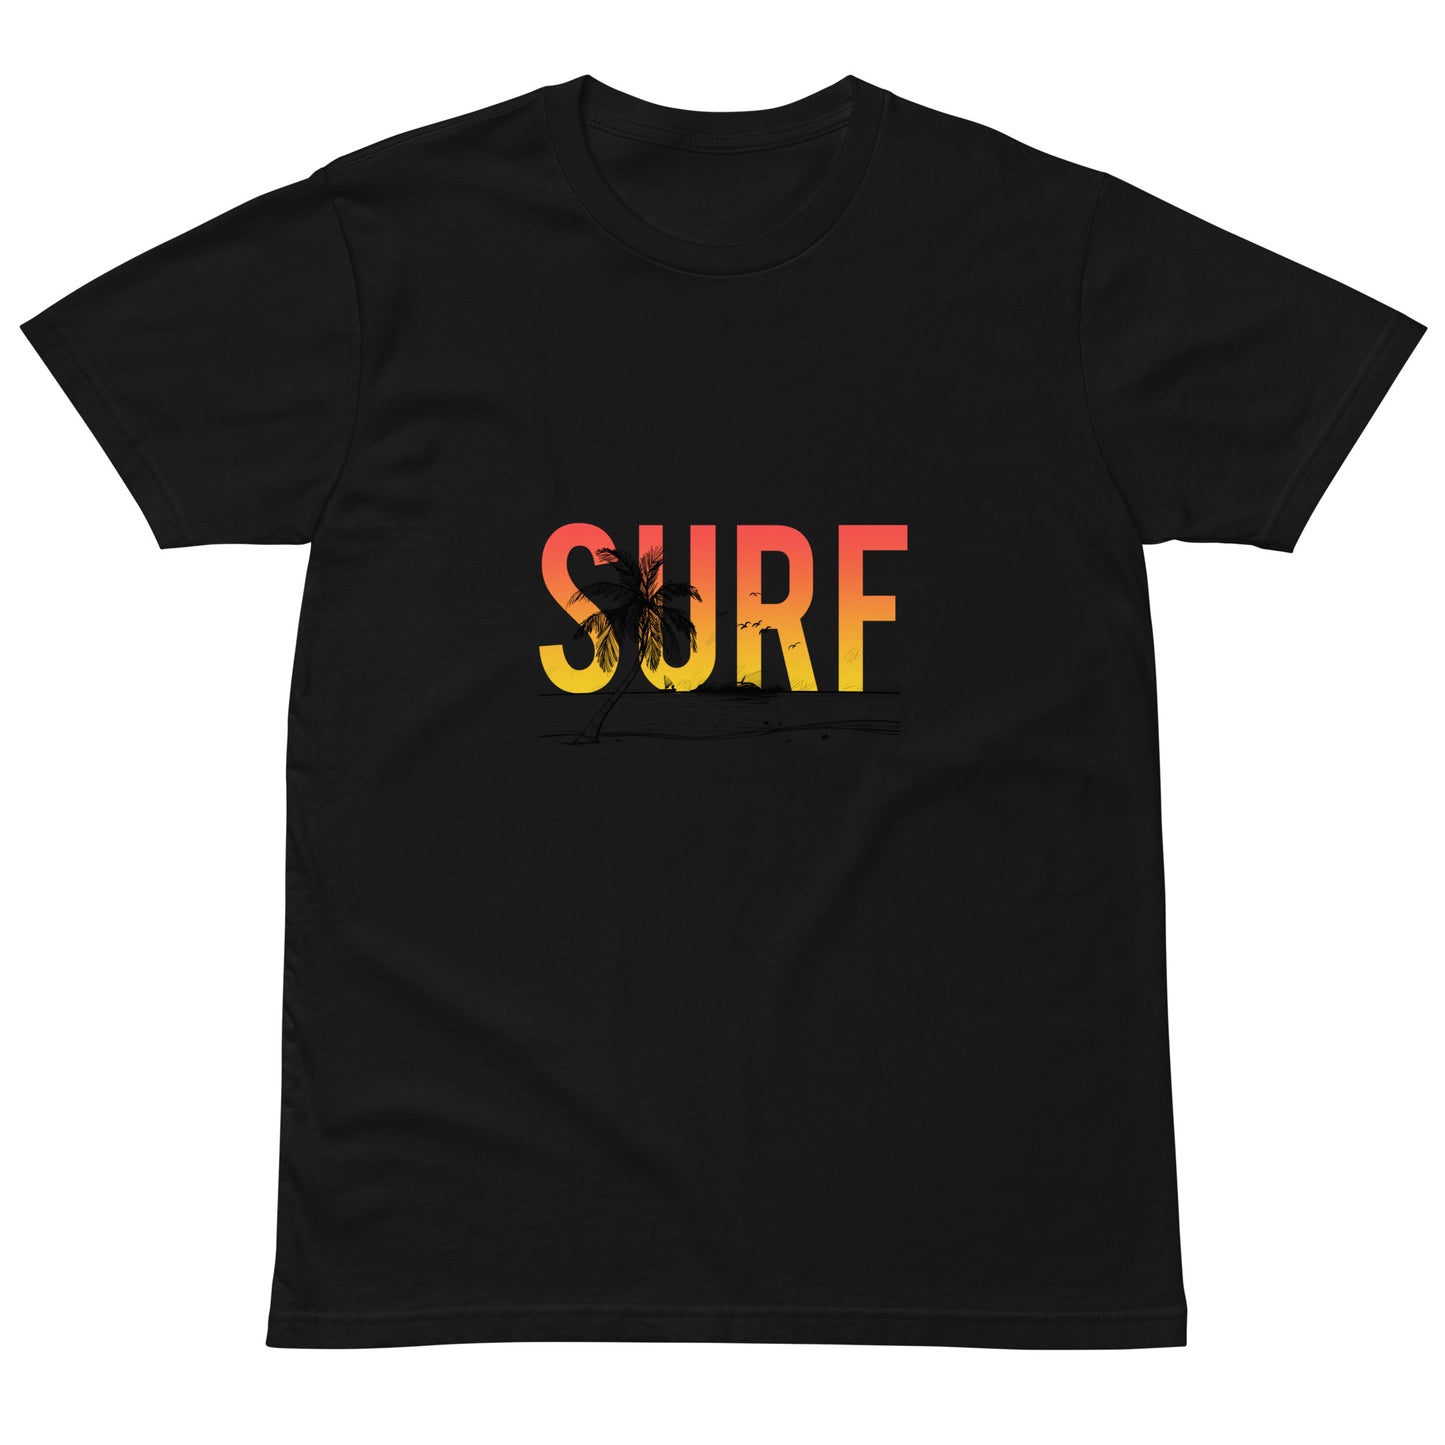 Unisex premium t-shirt - Surf